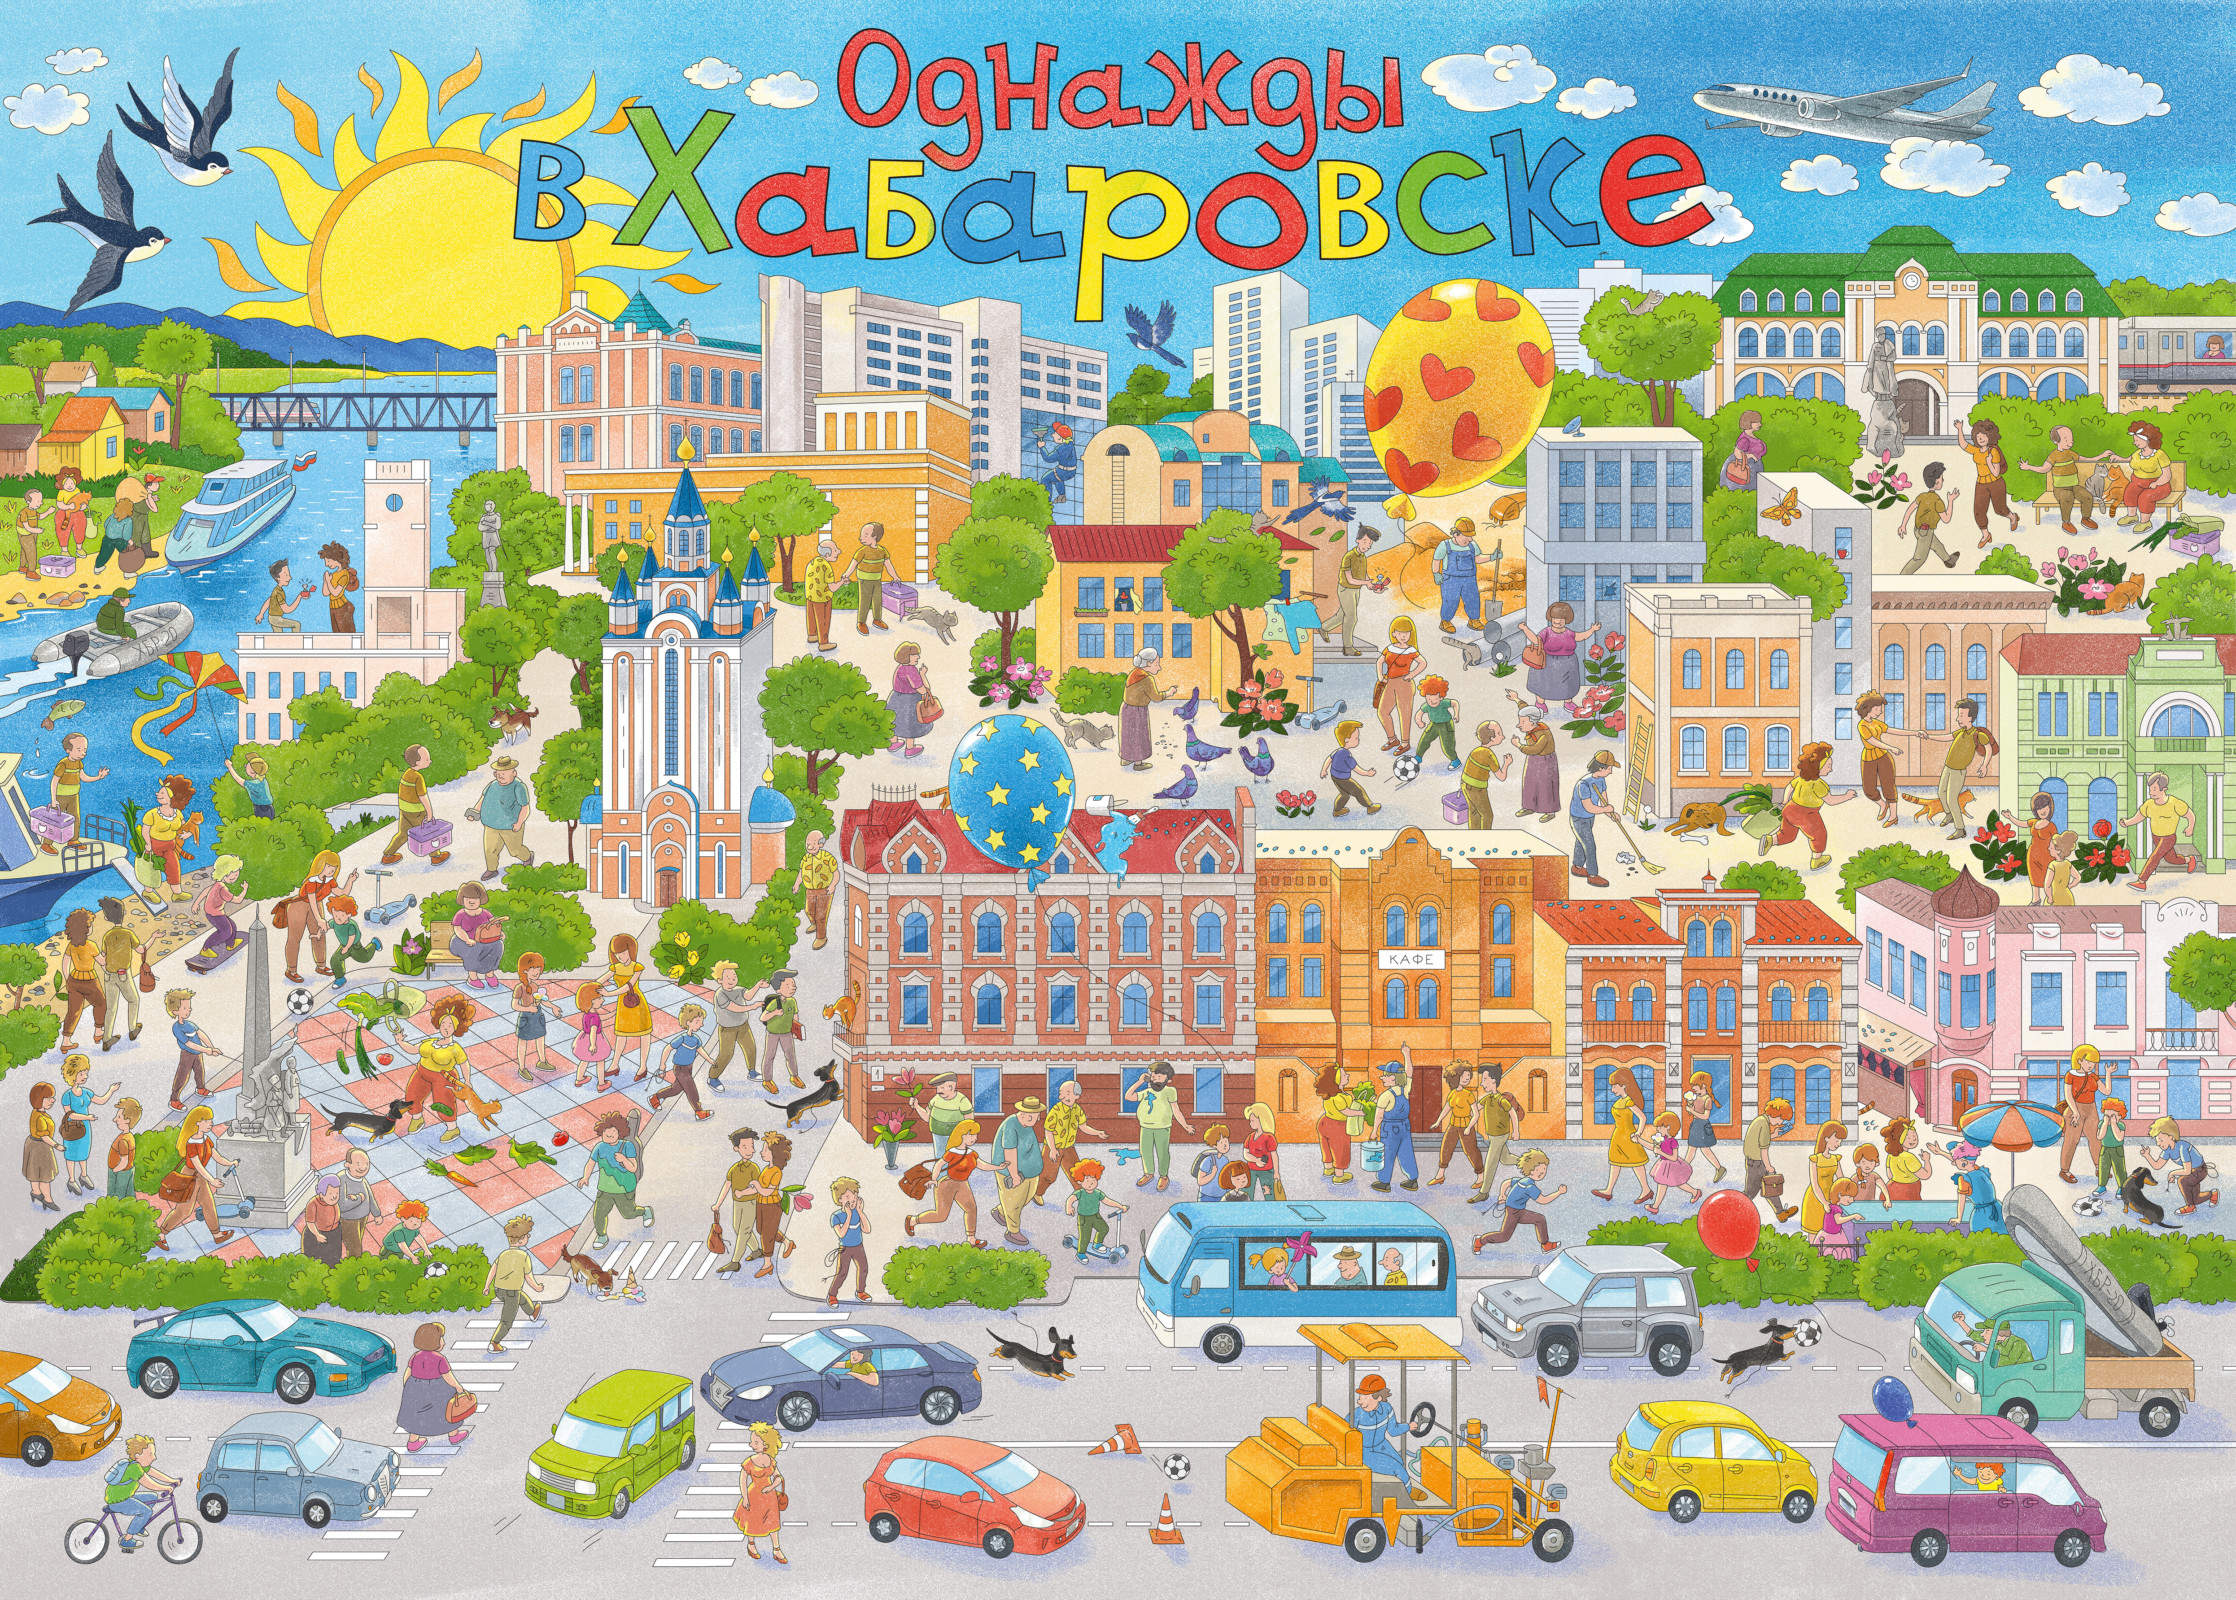 раскраска Хабаровск, сделали раскраску про город, гигантские раскраски, плакатные раскраски, виммельбух — большая раскраска для игрового обучения краеведению